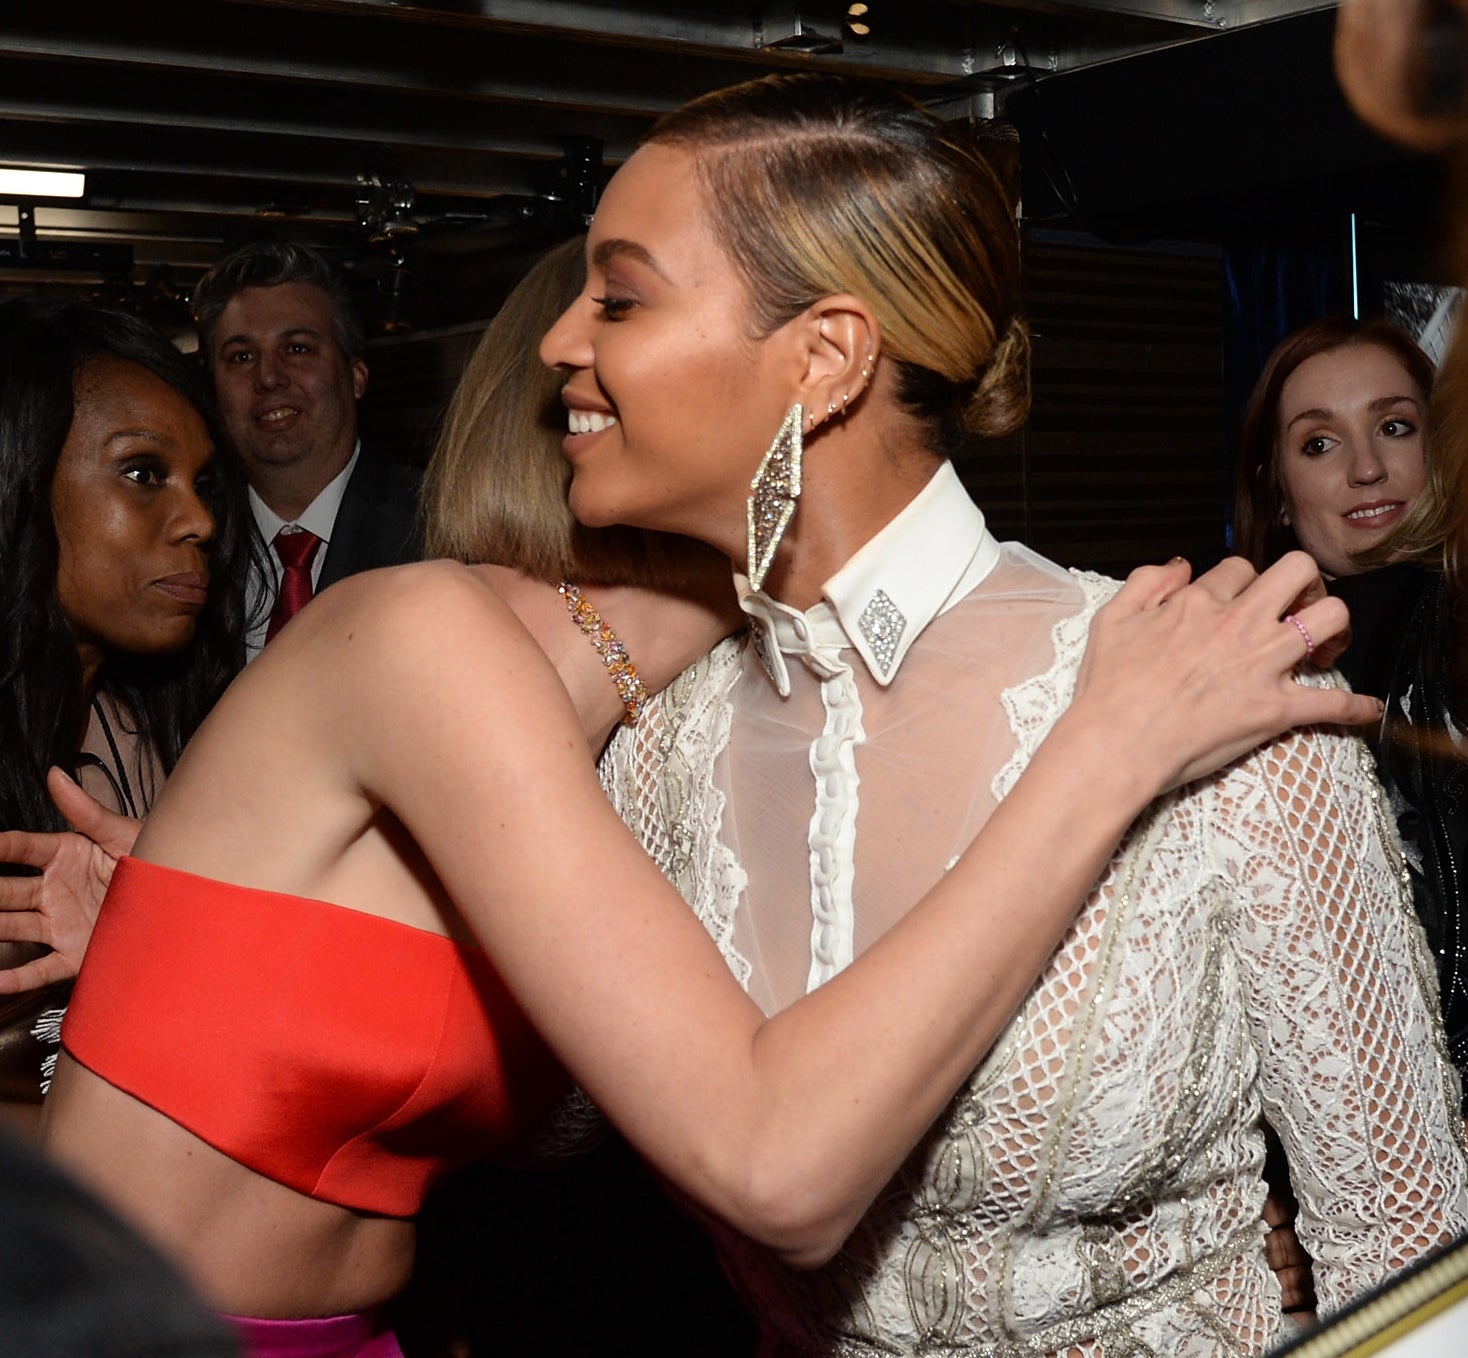 Taylor and Beyoncé hugging